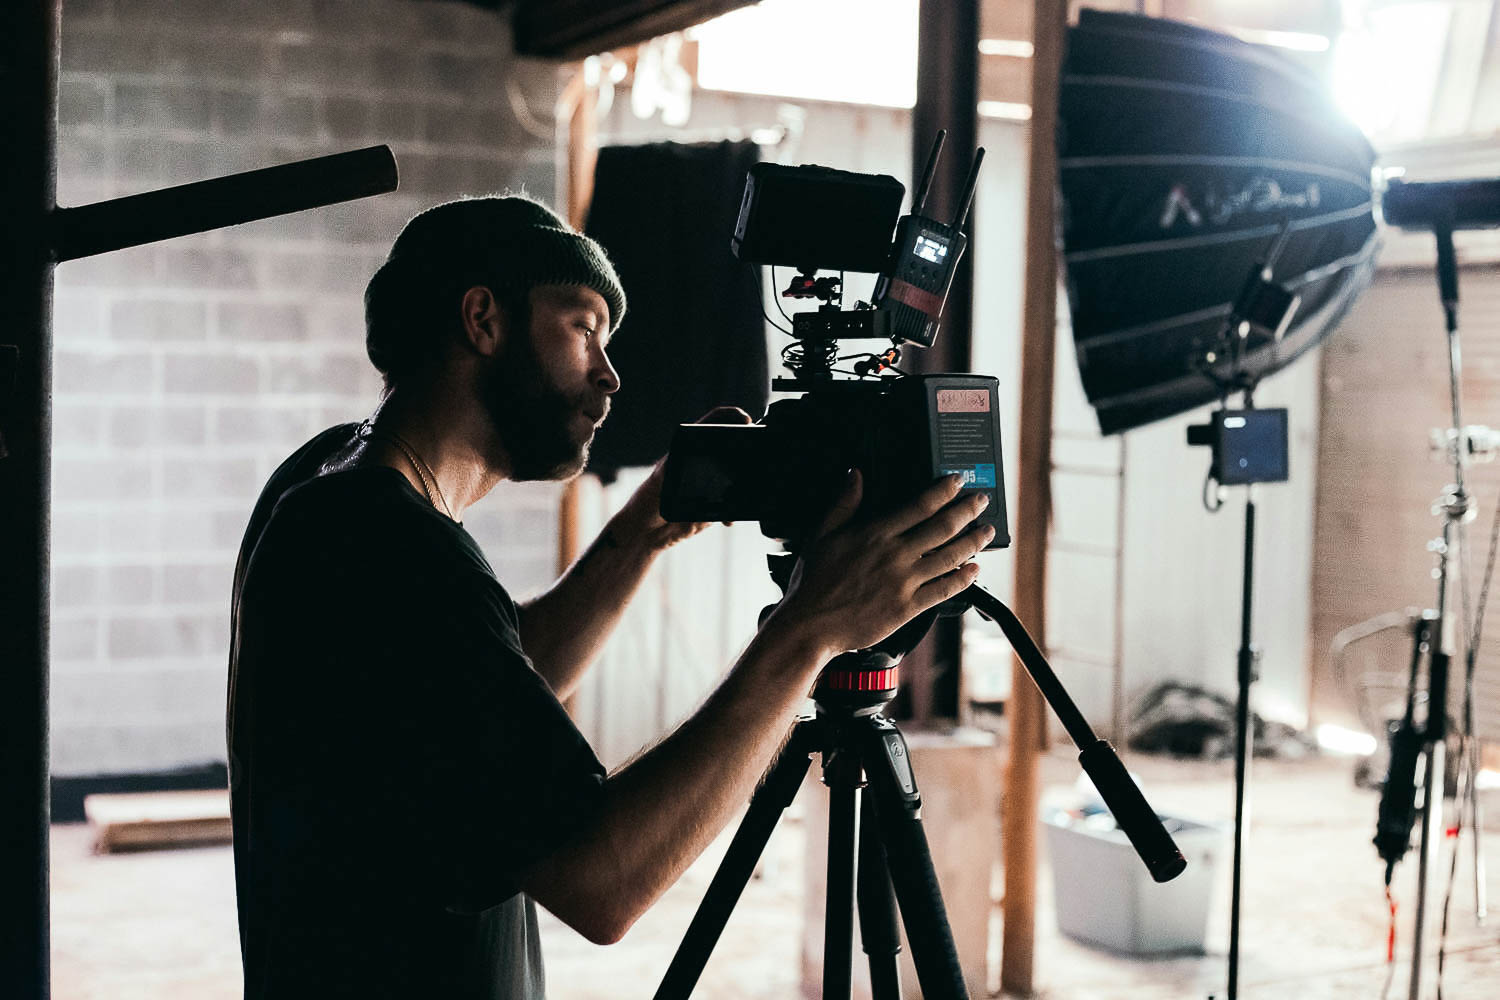 Ein Mann bedient eine Videokamera. Im Hintergrund sind verschiedene Geräte für Videoproduktionen zu sehen.